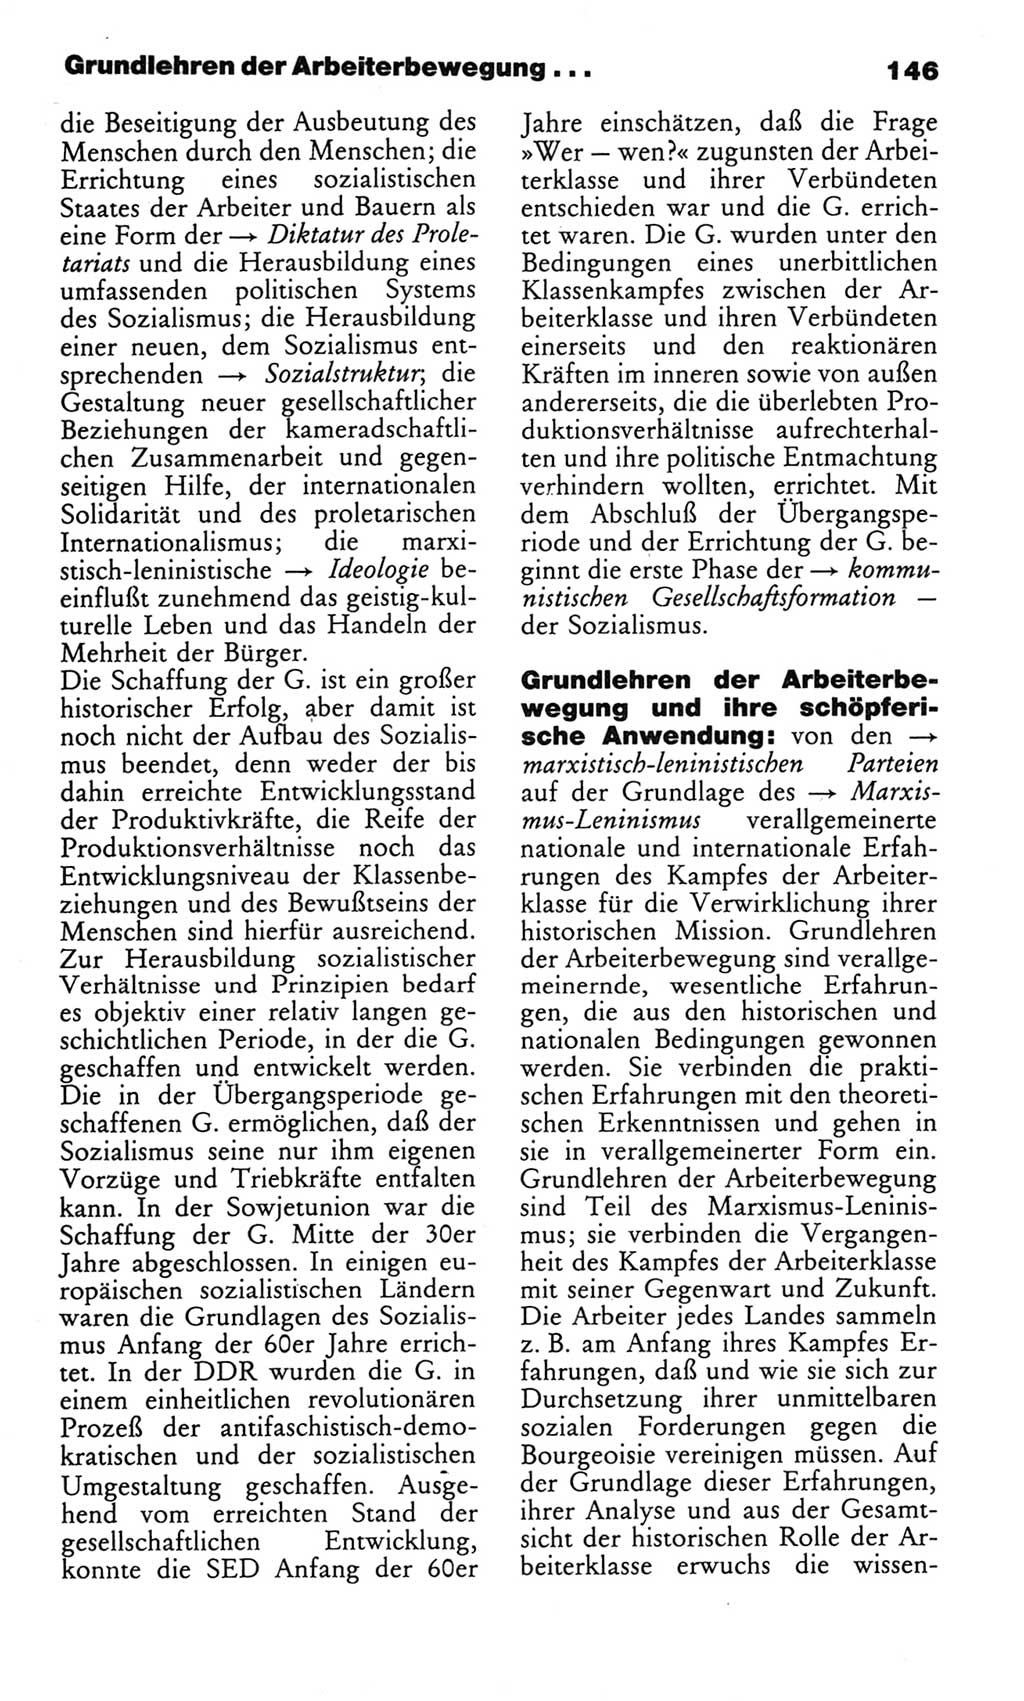 Wörterbuch des wissenschaftlichen Kommunismus [Deutsche Demokratische Republik (DDR)] 1982, Seite 146 (Wb. wiss. Komm. DDR 1982, S. 146)